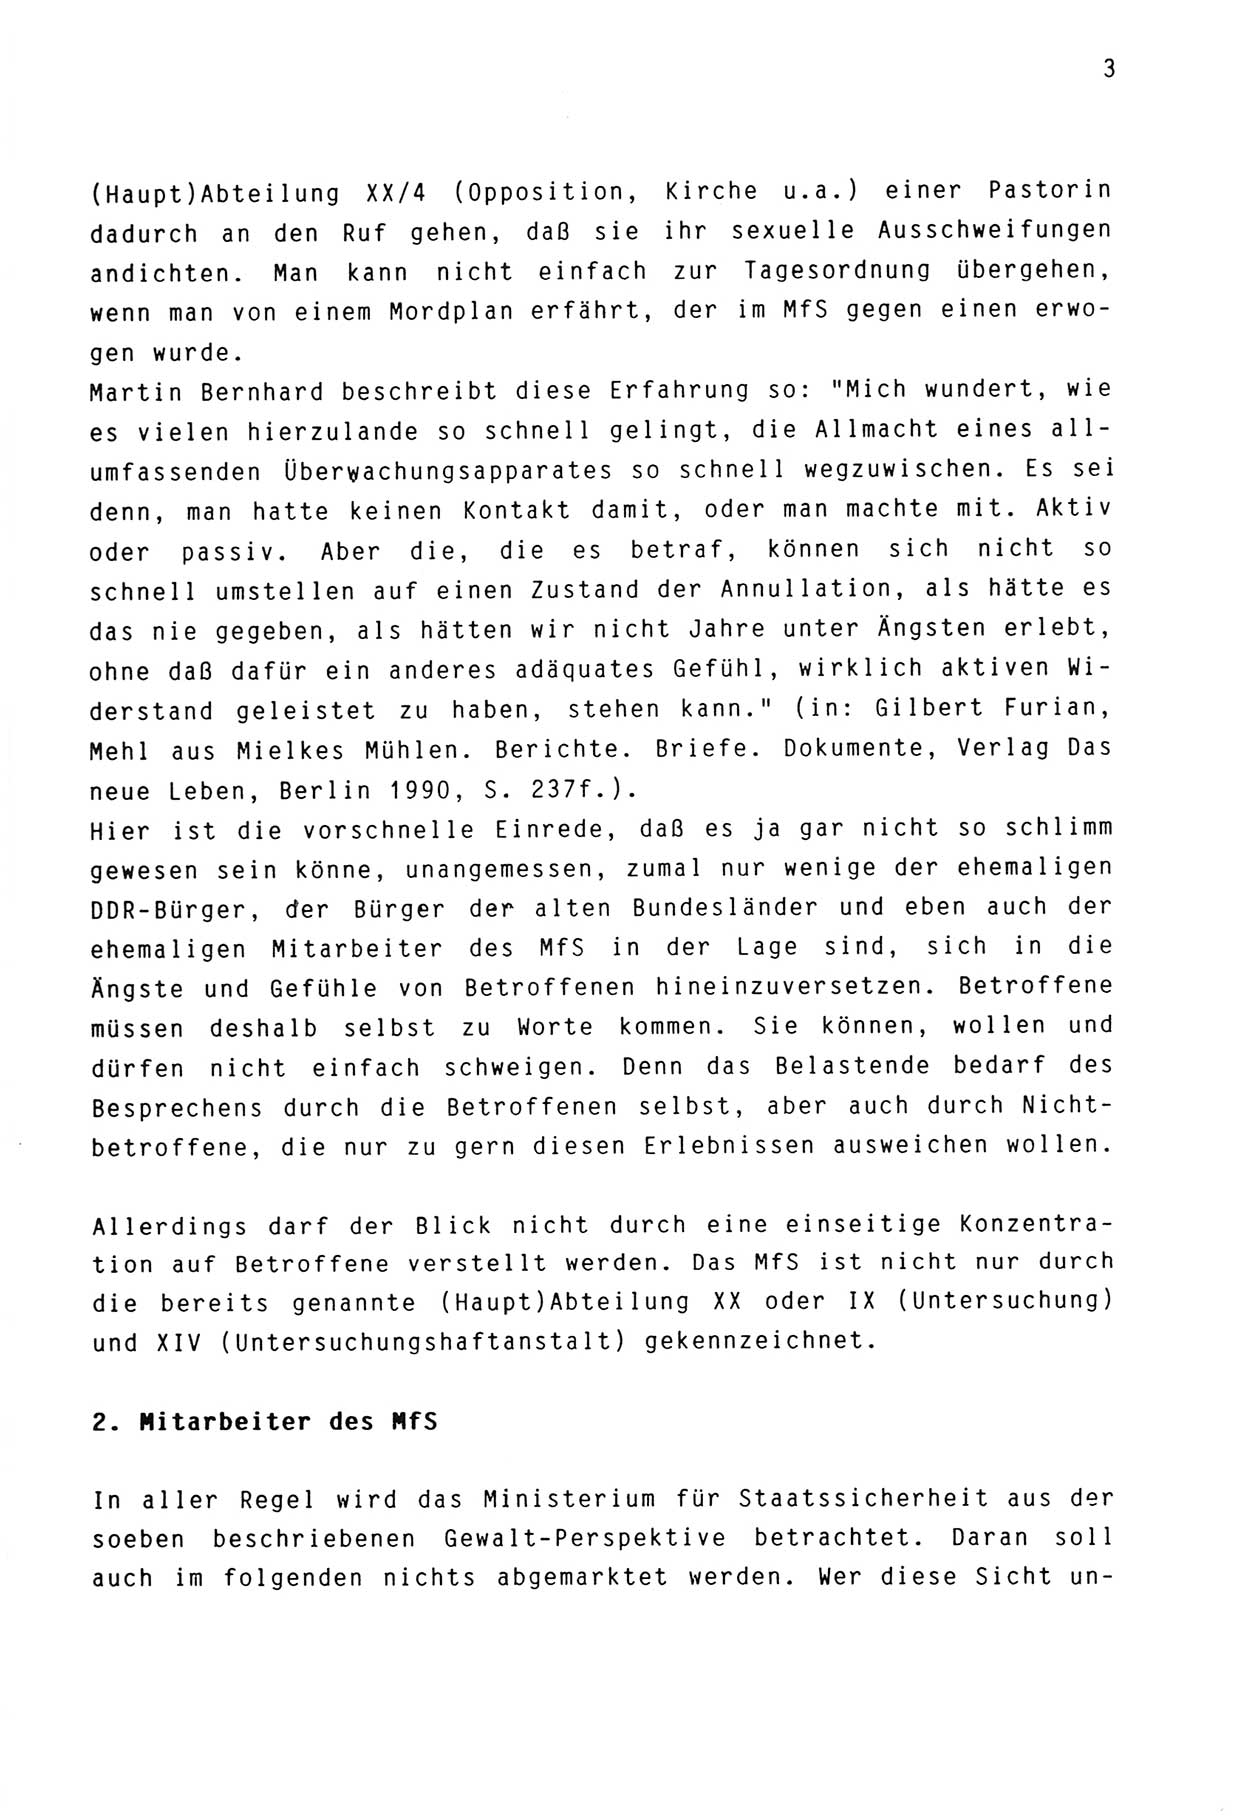 Zwie-Gespräch, Beiträge zur Aufarbeitung der Stasi-Vergangenheit [Deutsche Demokratische Republik (DDR)], Ausgabe Nr. 3, Berlin 1991, Seite 3 (Zwie-Gespr. Ausg. 3 1991, S. 3)